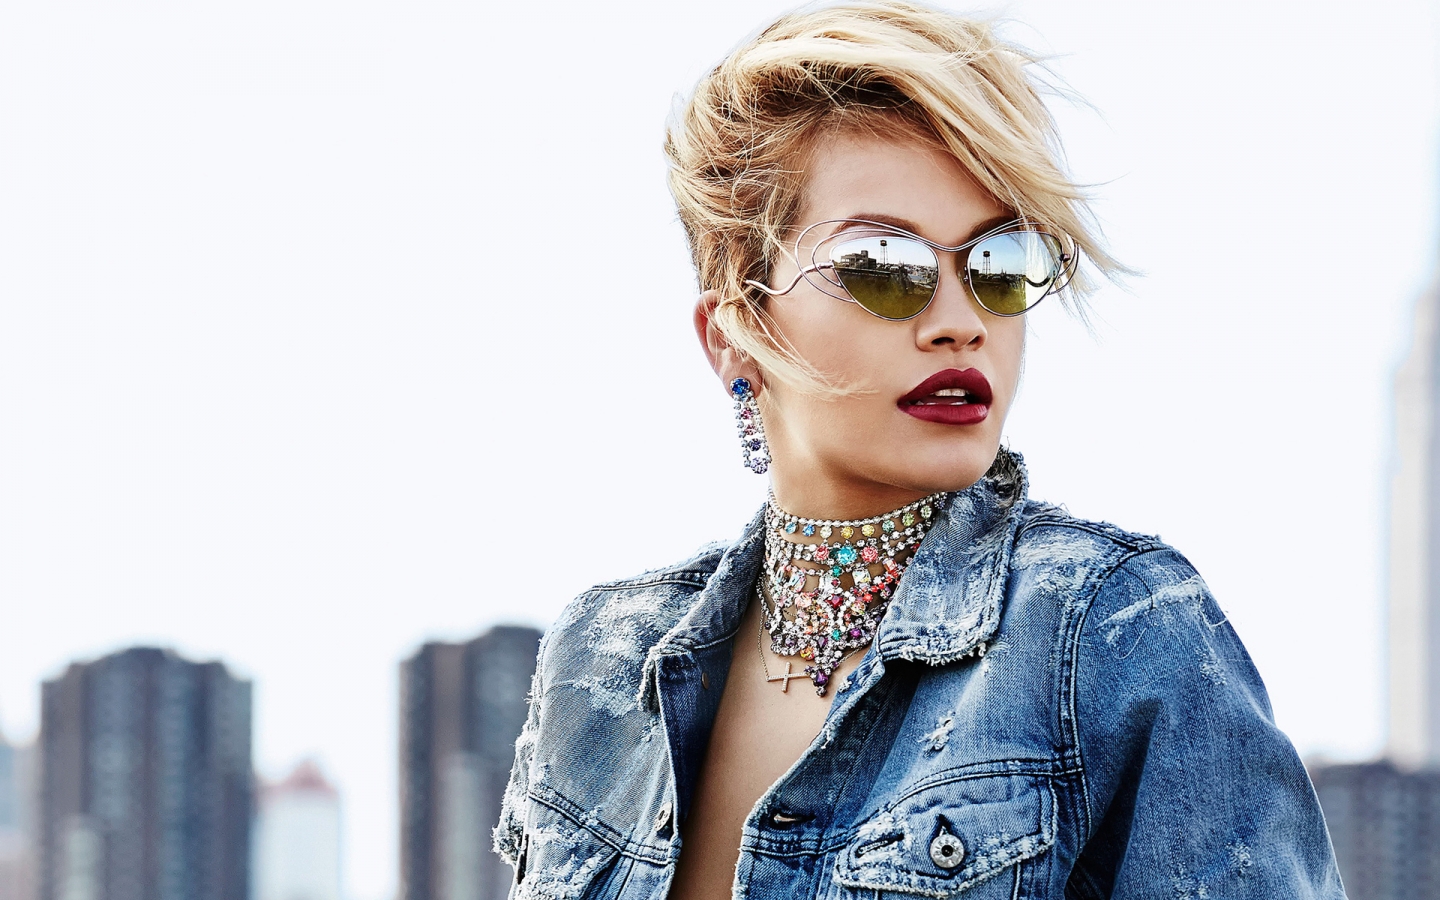 Rita Ora with Sunglasses for 1440 x 900 widescreen resolution